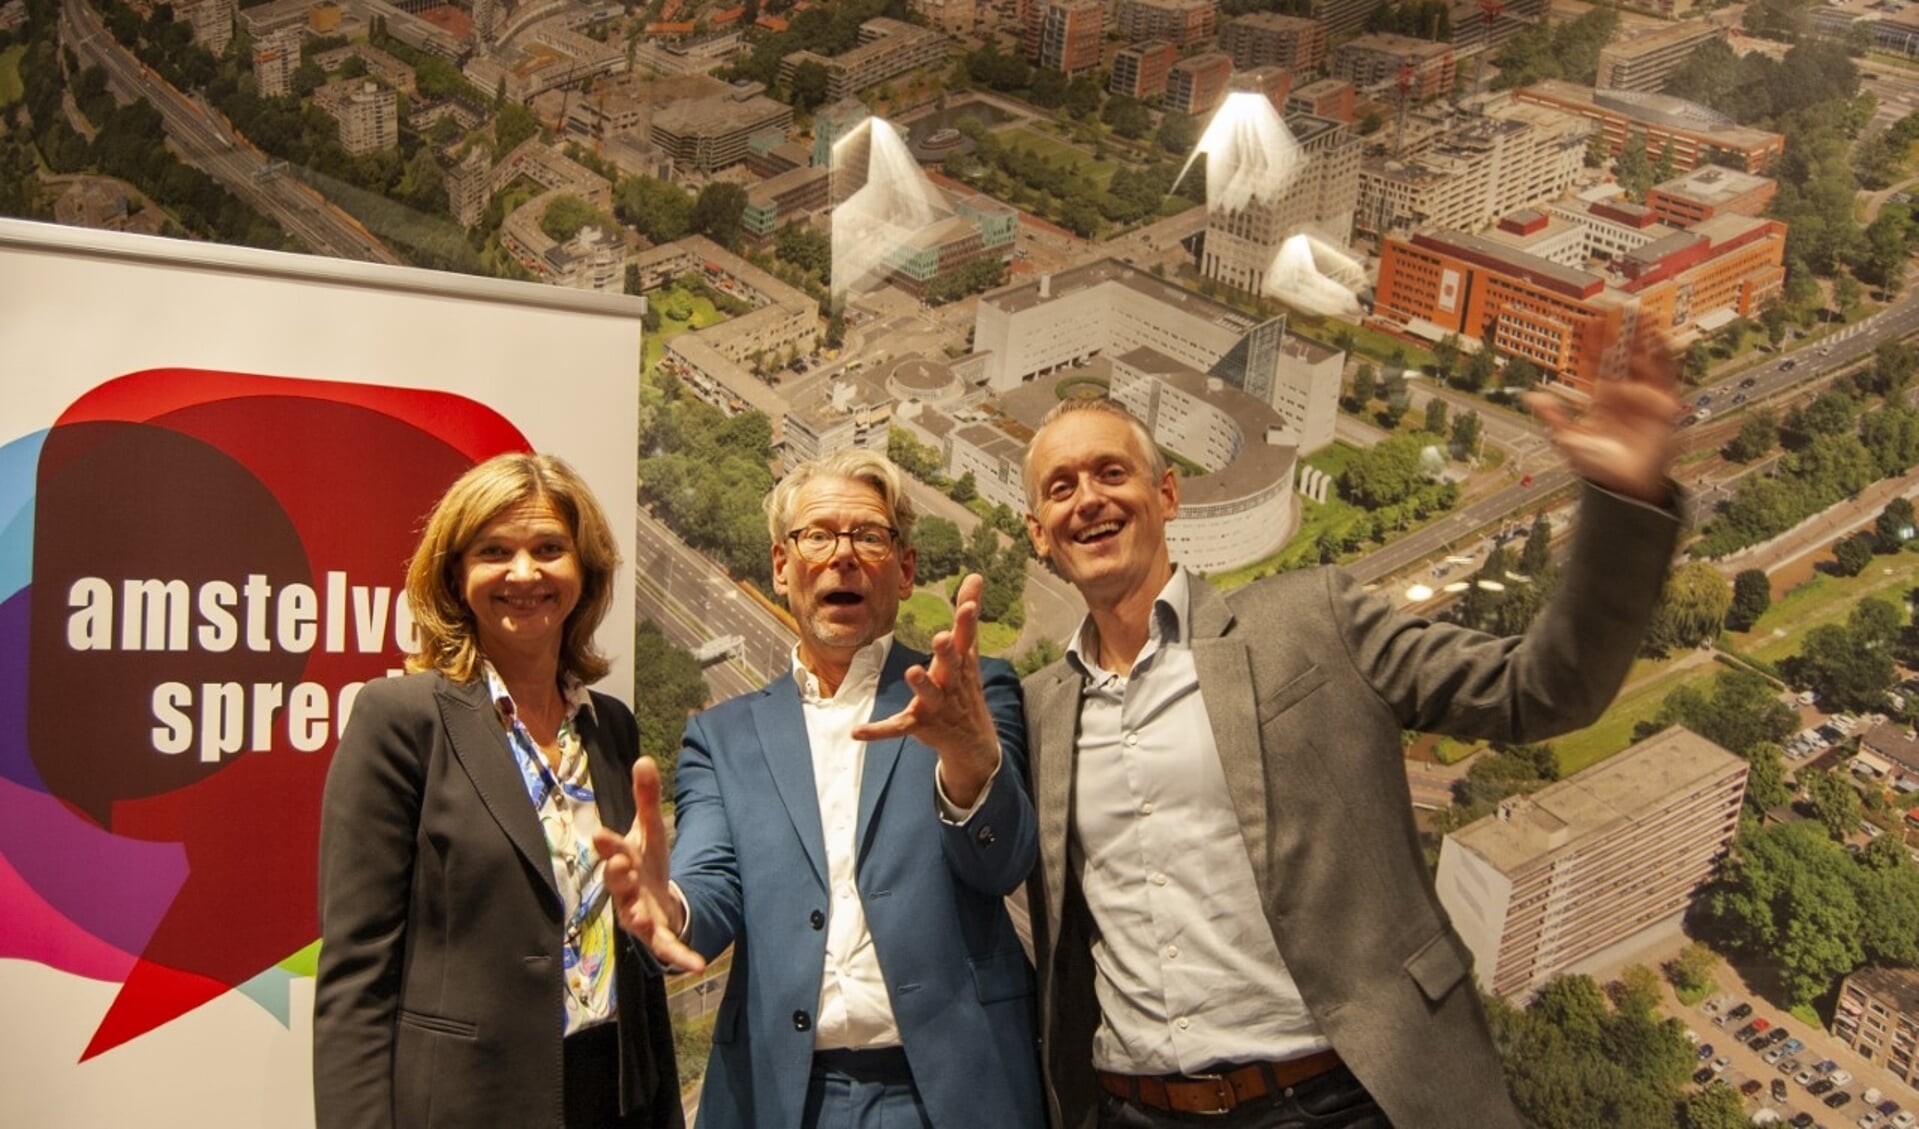 De initiatiefnemers van AmstelveenSpreekt: Ilse Meester, Frans Huissen en Etienne Commissaris.